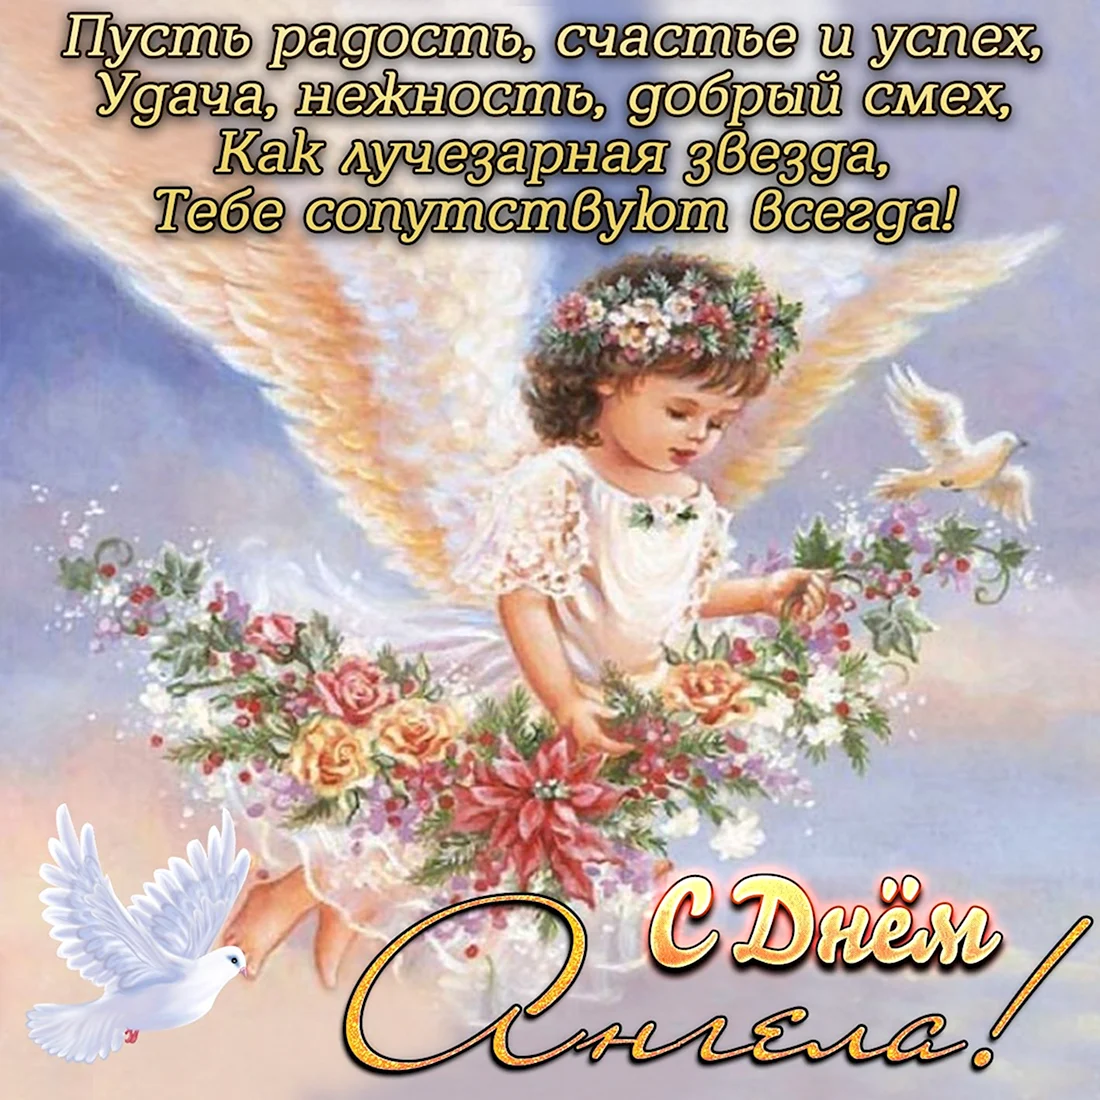 День ангела. Открытка для детей